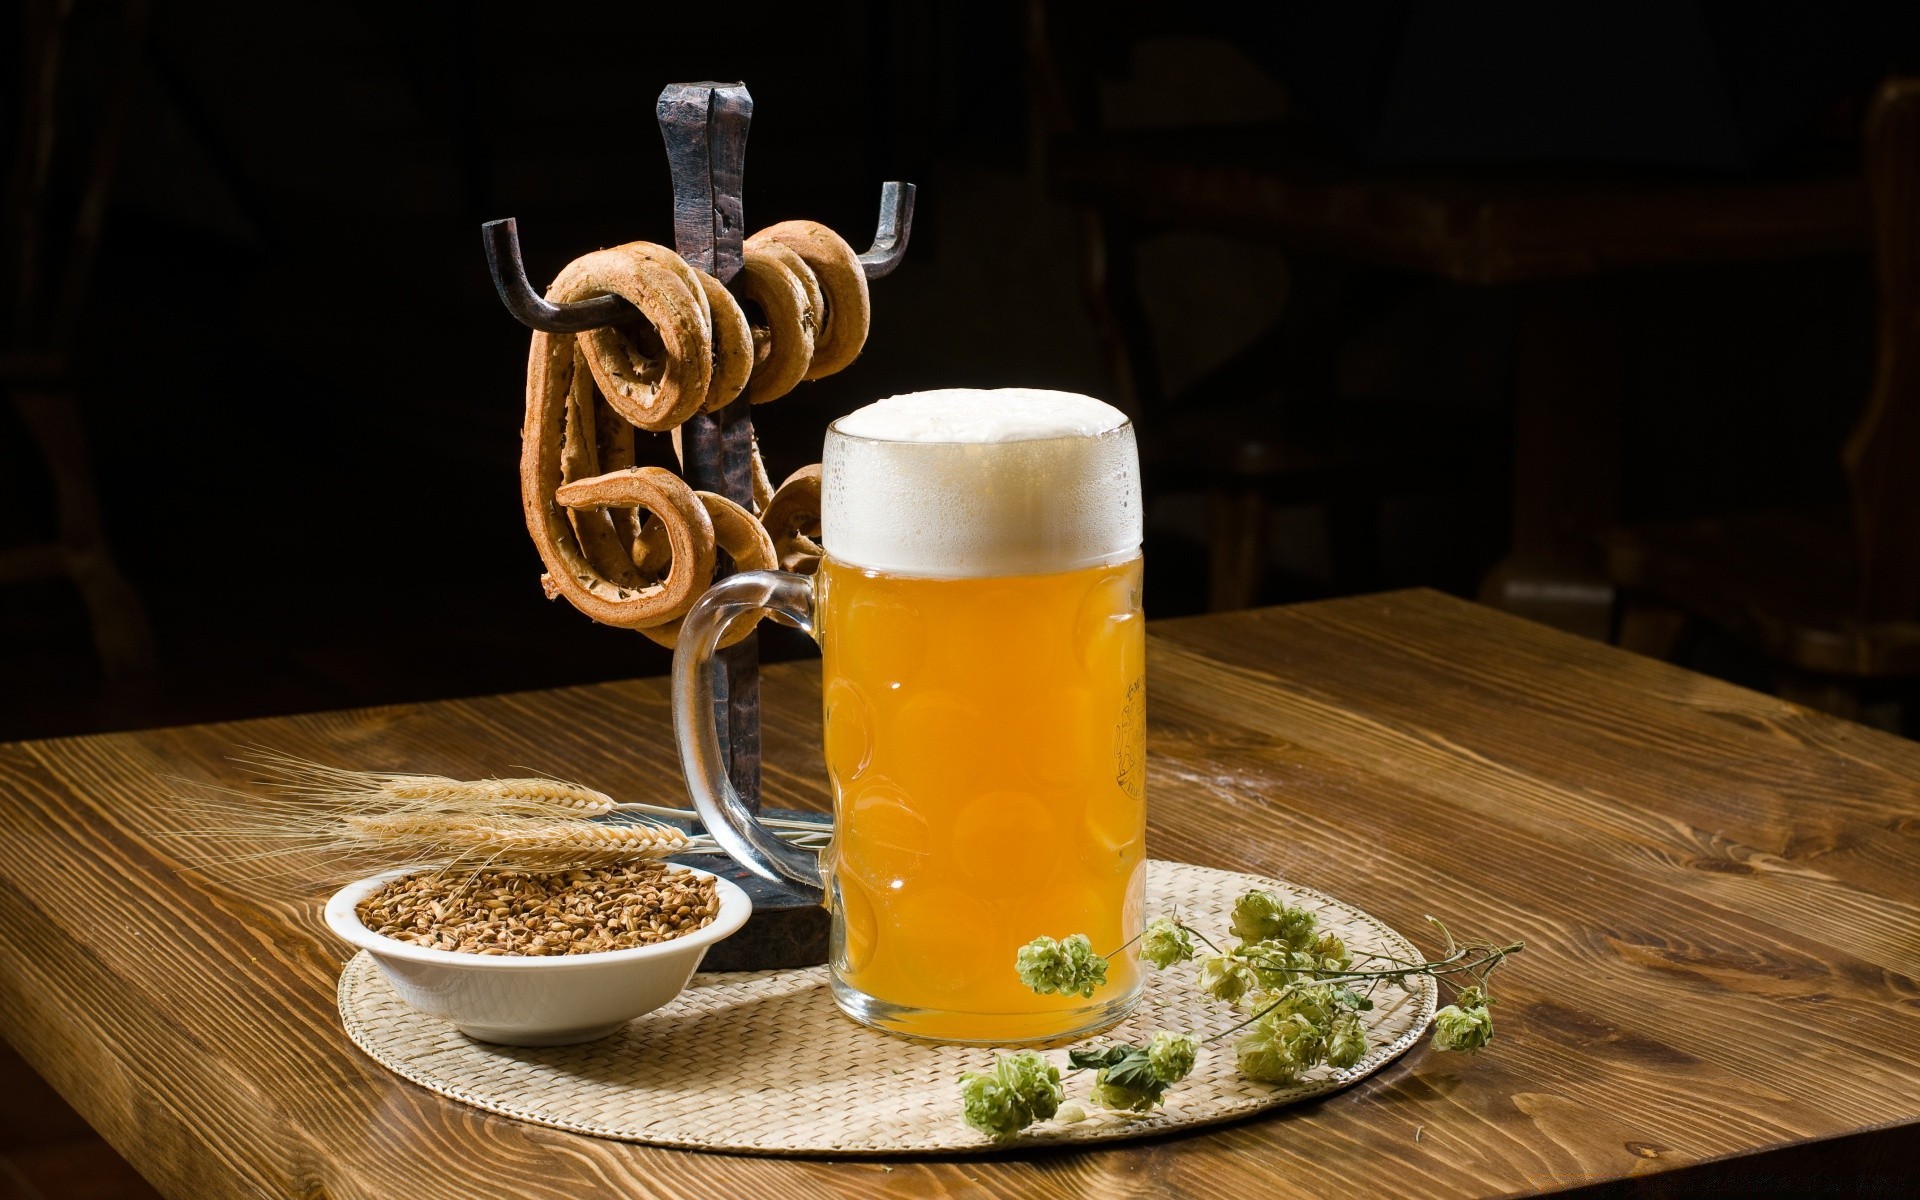 напитки пиво пить пена стекло кружка алкоголь таблица паб бар лагер древесины але еда пивоварня участник традиционные поллитра самогон